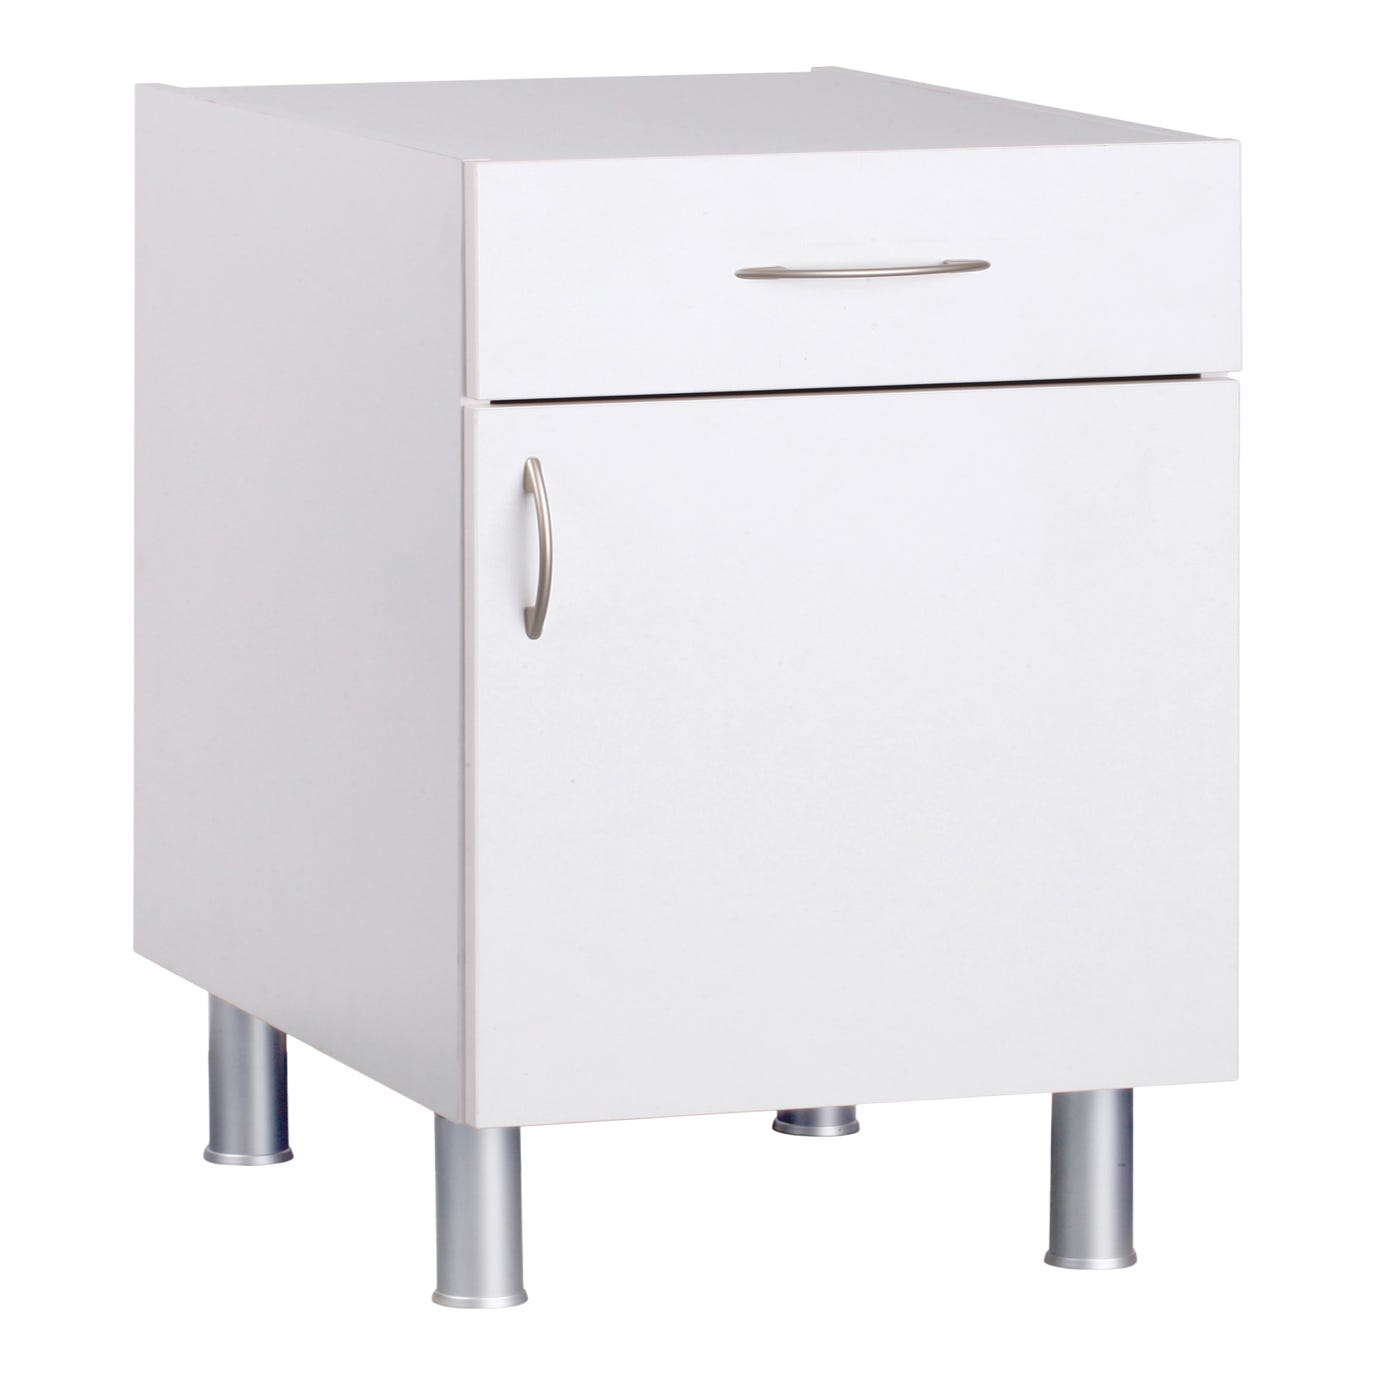 Mueble bajo BASIC blanco 1 puerta + 1 cajón fabricado en